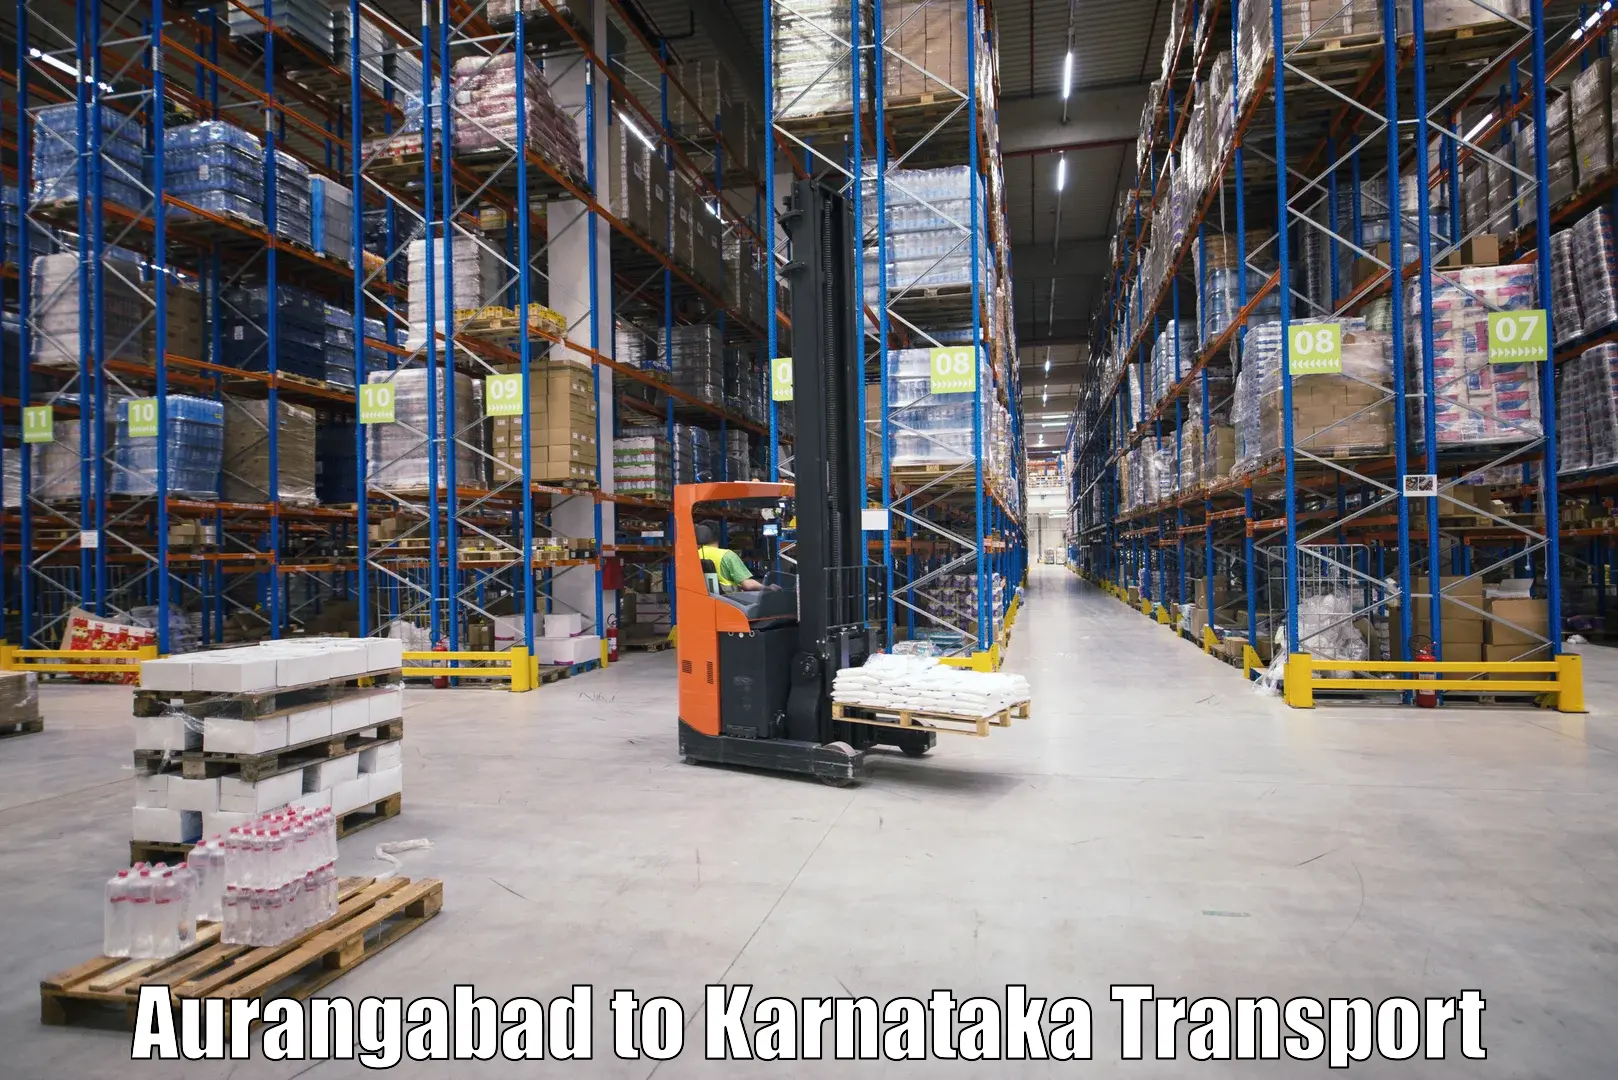 Commercial transport service Aurangabad to Alnavar